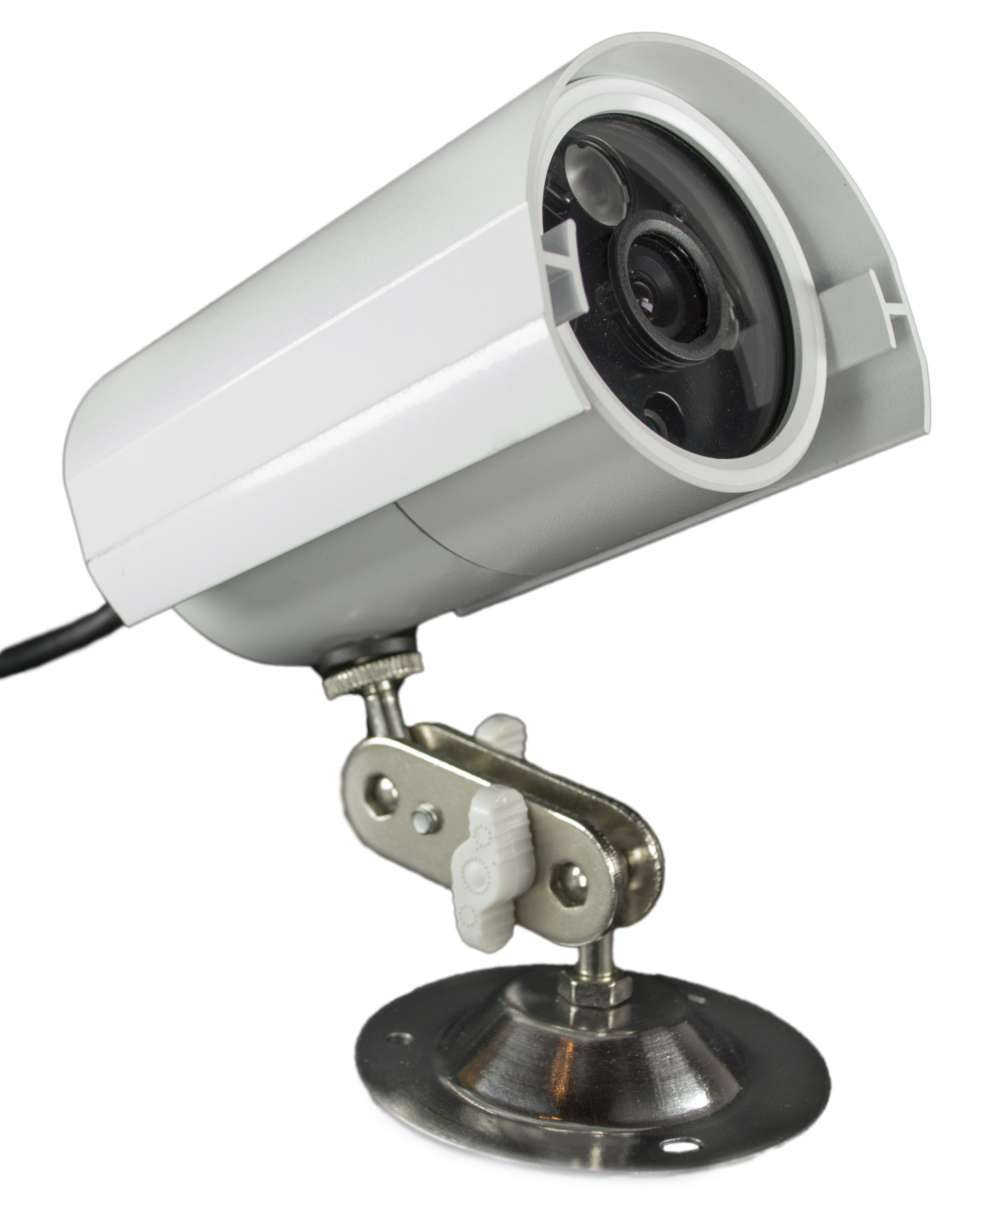 Камеры видеонаблюдения купить в спб. Камера видеонаблюдения модель YH-y04s. Камера уличного наблюдения st2003. Камера видеонаблюдения HT 2334z. Камера наблюдения Pro-1003-c.